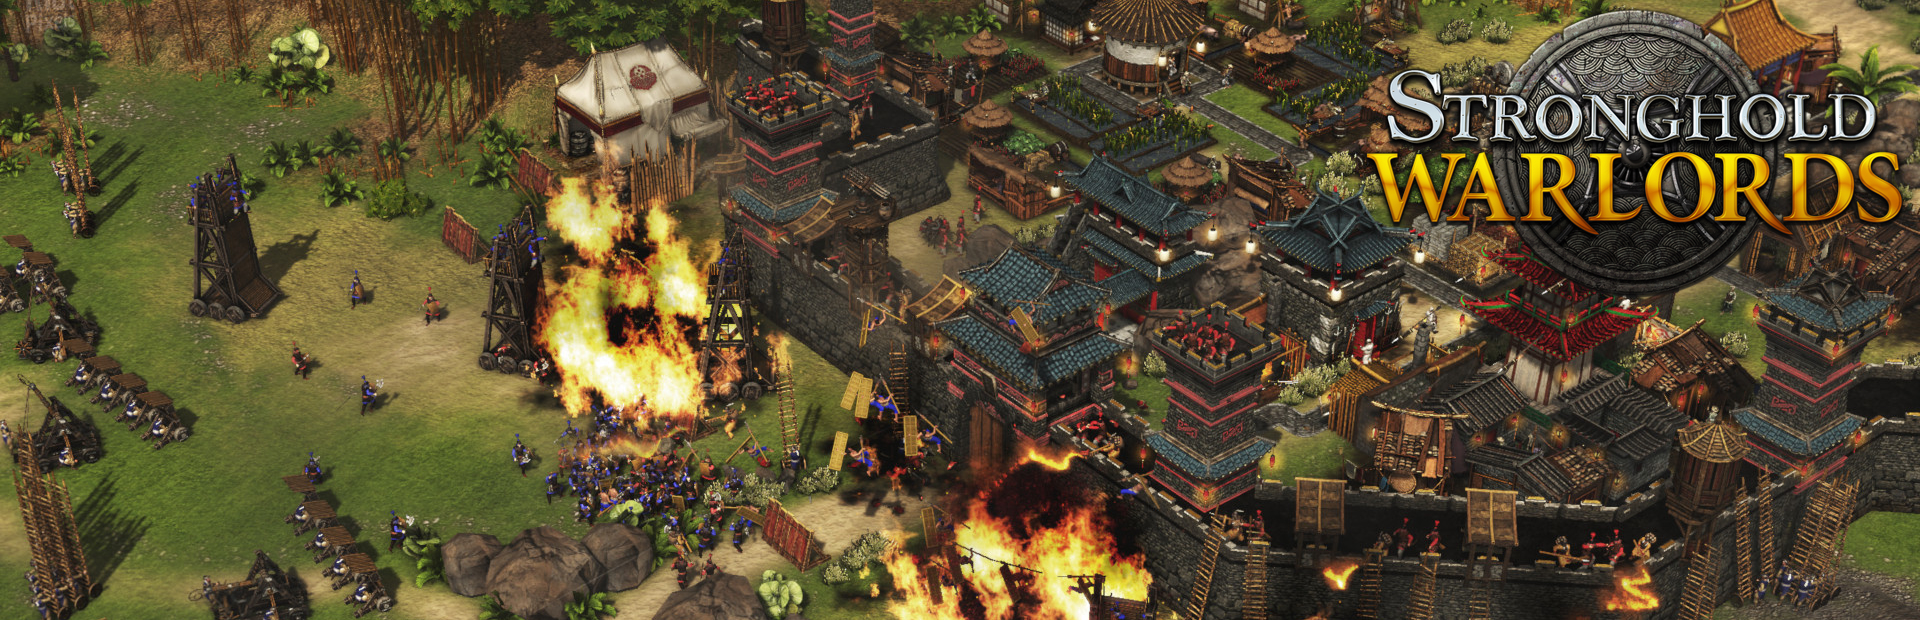 دانلود بازی Stronghold: Warlords برای پی سی | گیمباتو